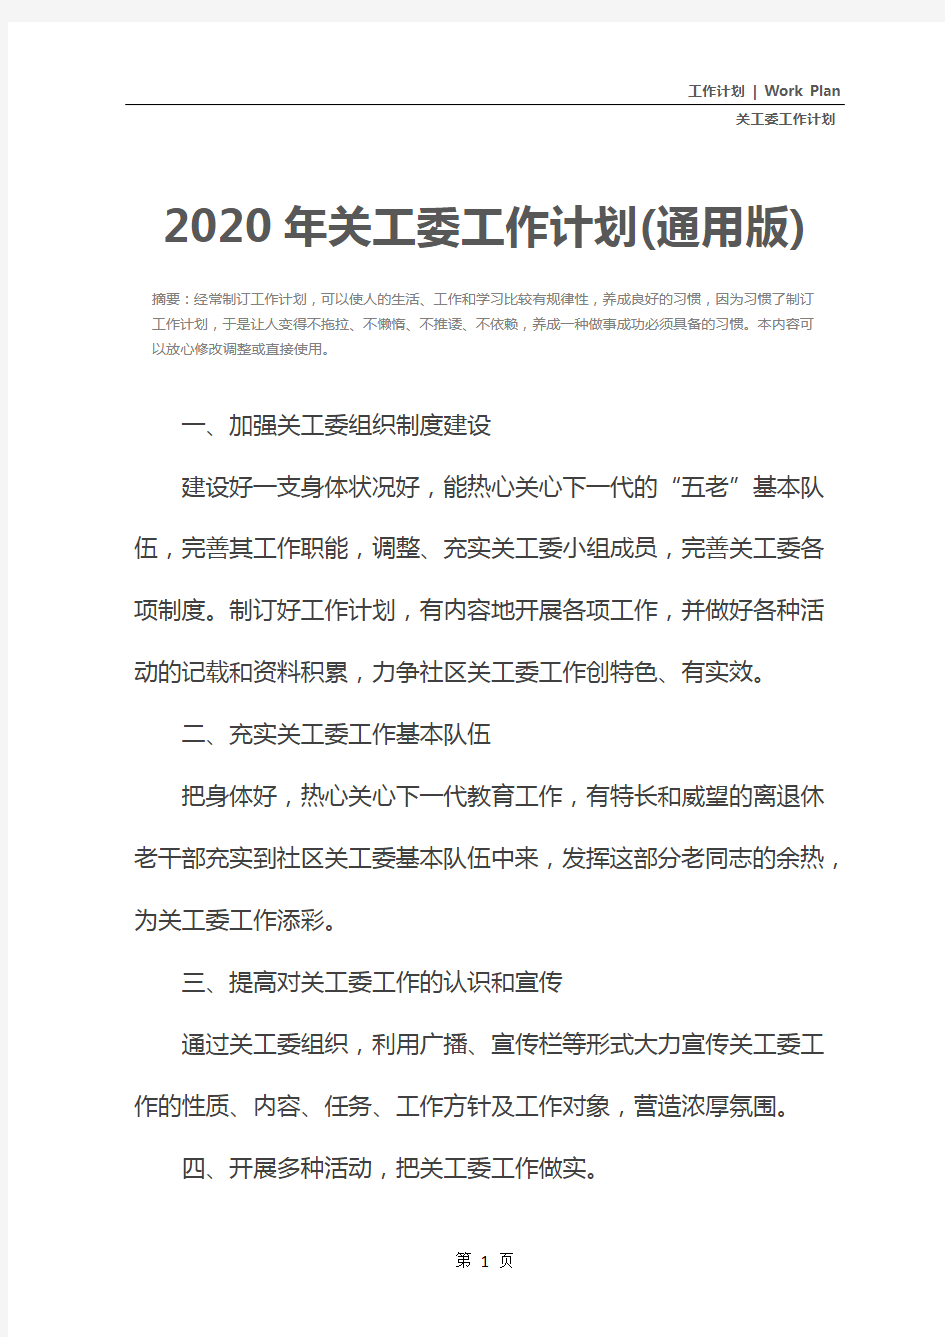 2020年关工委工作计划(通用版)